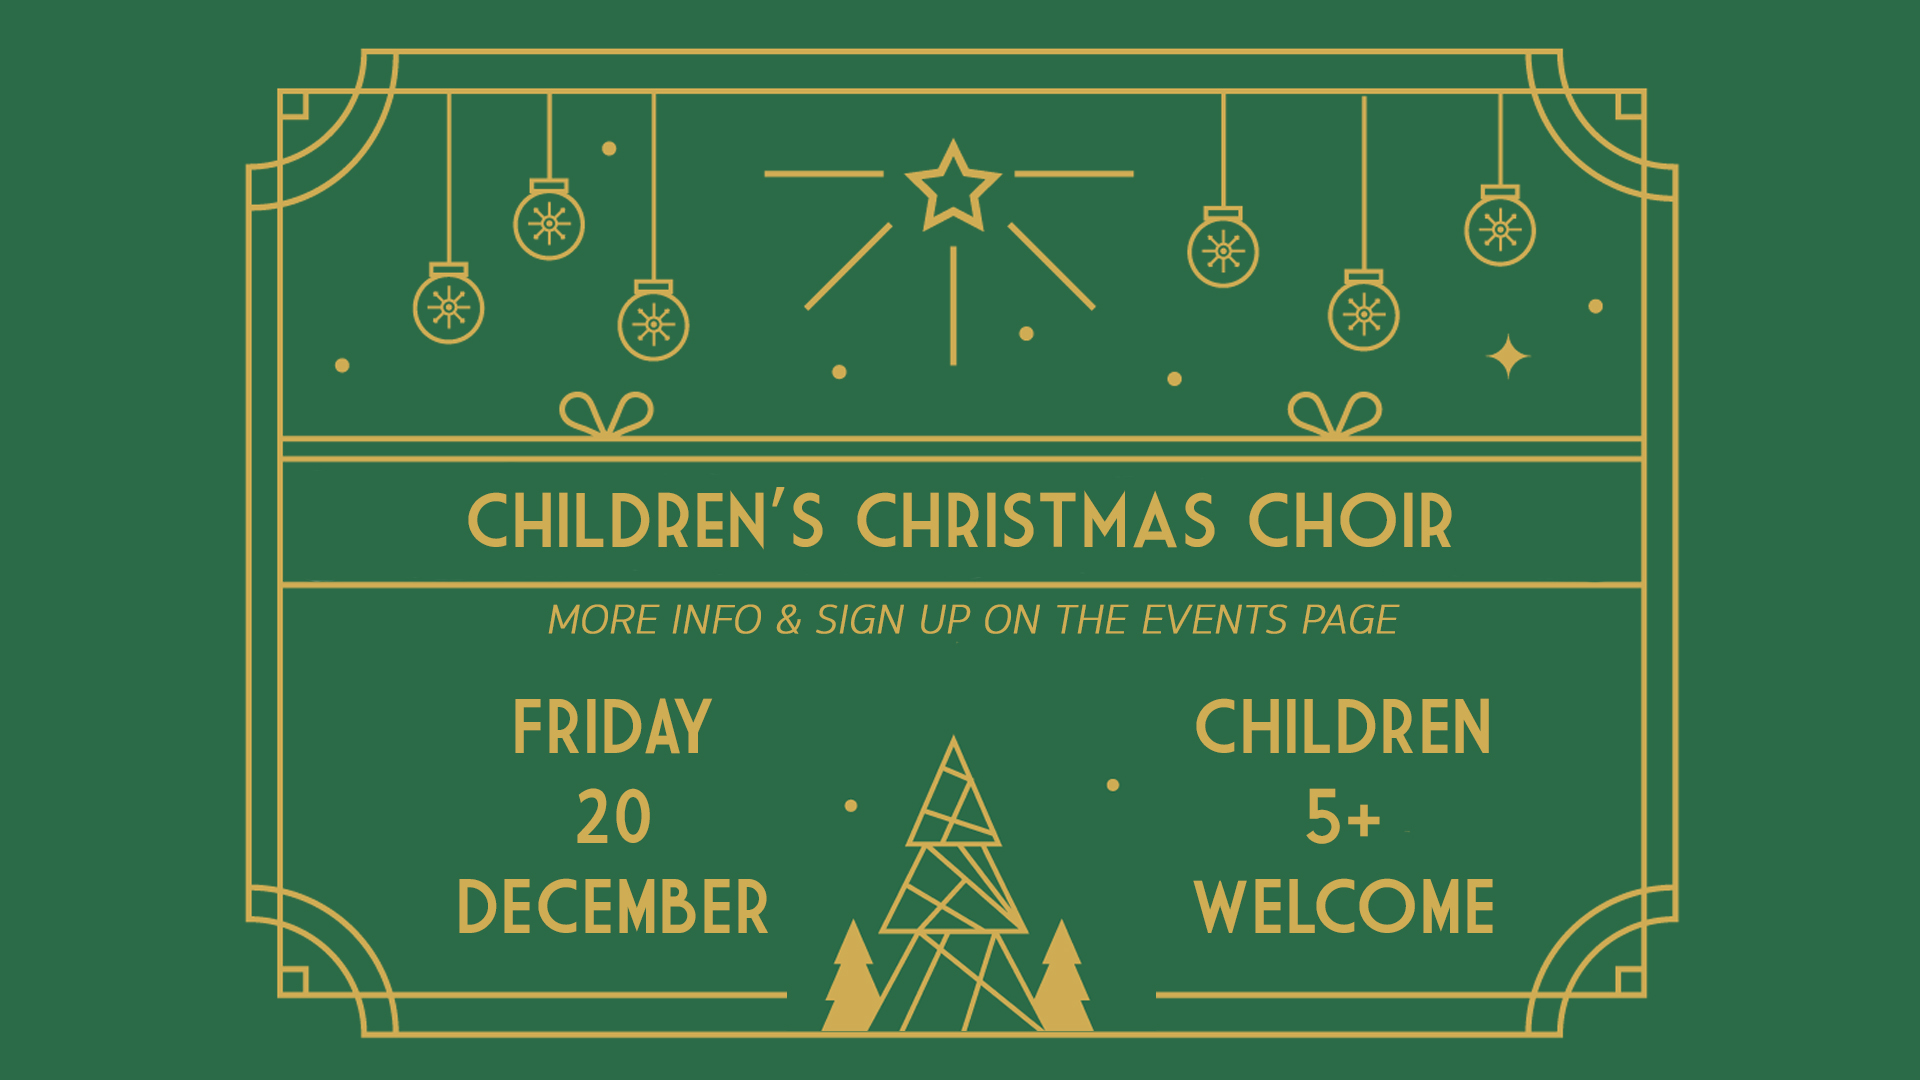 Children's Choir Slide image